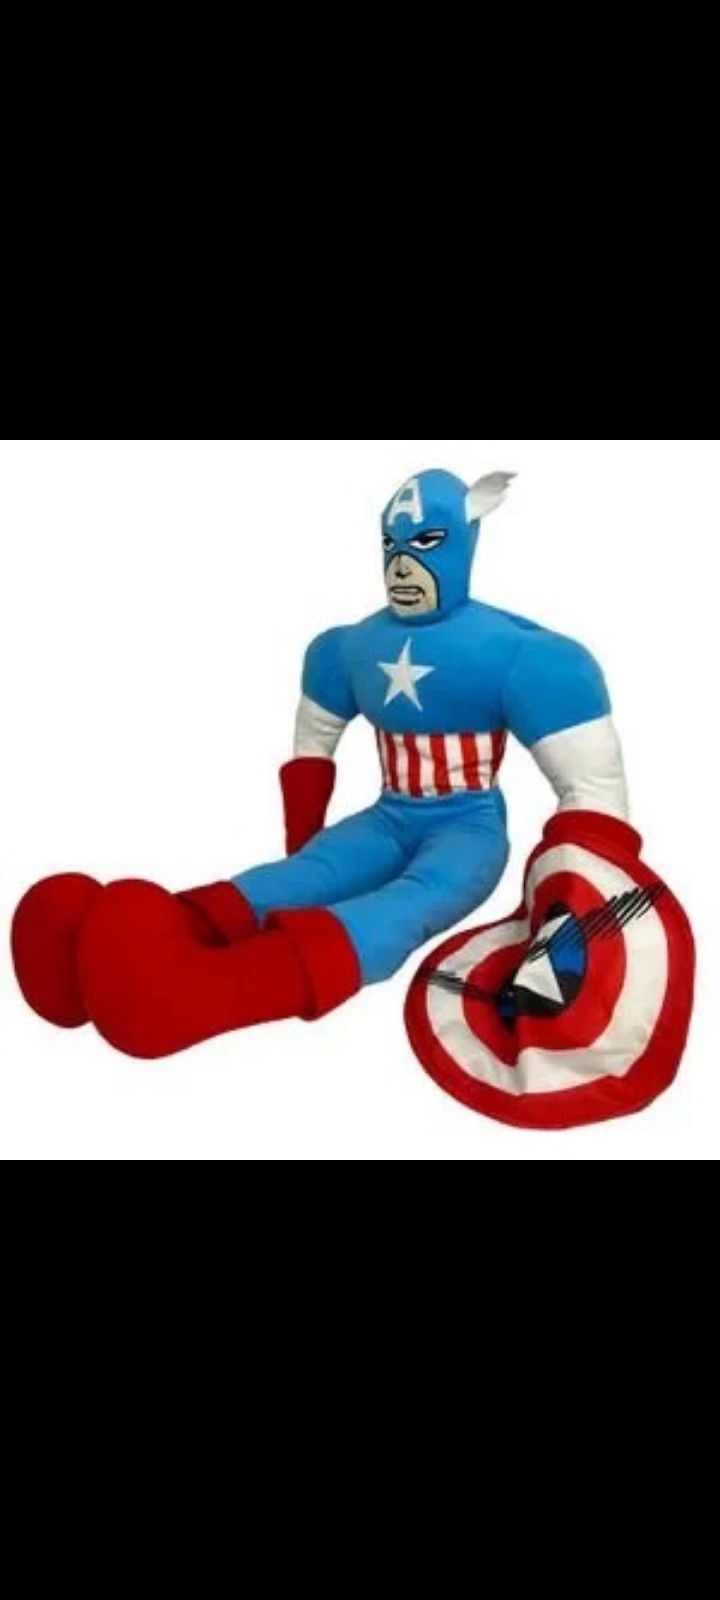 Marvel avengers captain America plush 